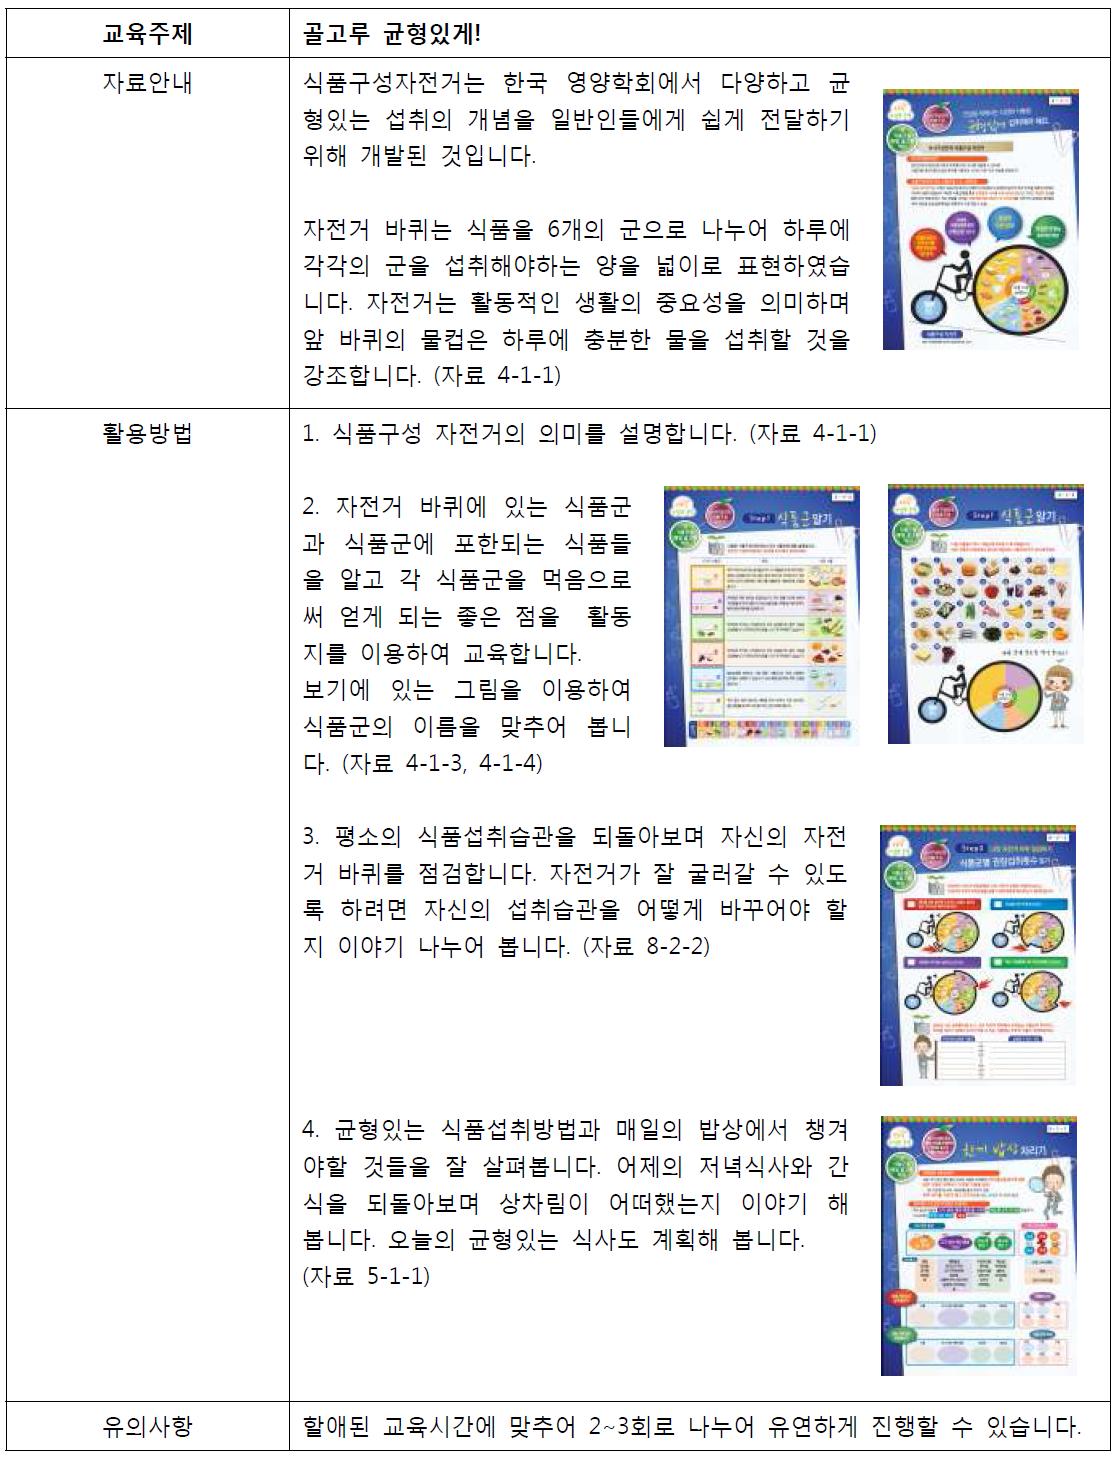 영양교육안 예시 1(Examples of guidelines for nutrition education 1)